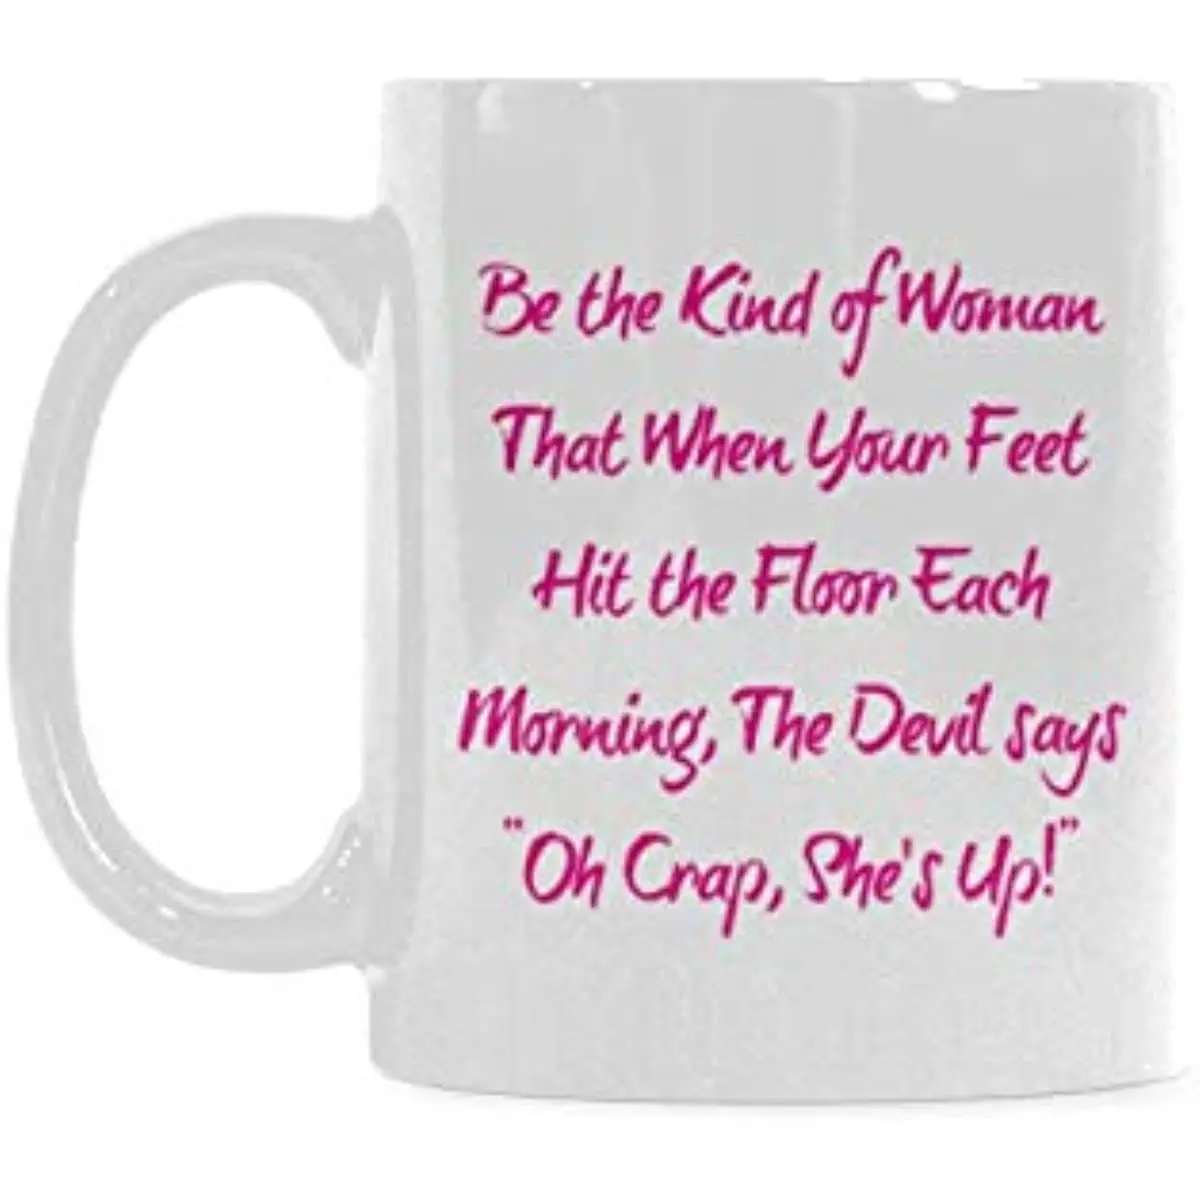 

Женщина, когда ваши ноги каждое утро попадают на пол, дьявол говорит о, чушь, она вверх, керамическая кофейная кружка, чайные чашки